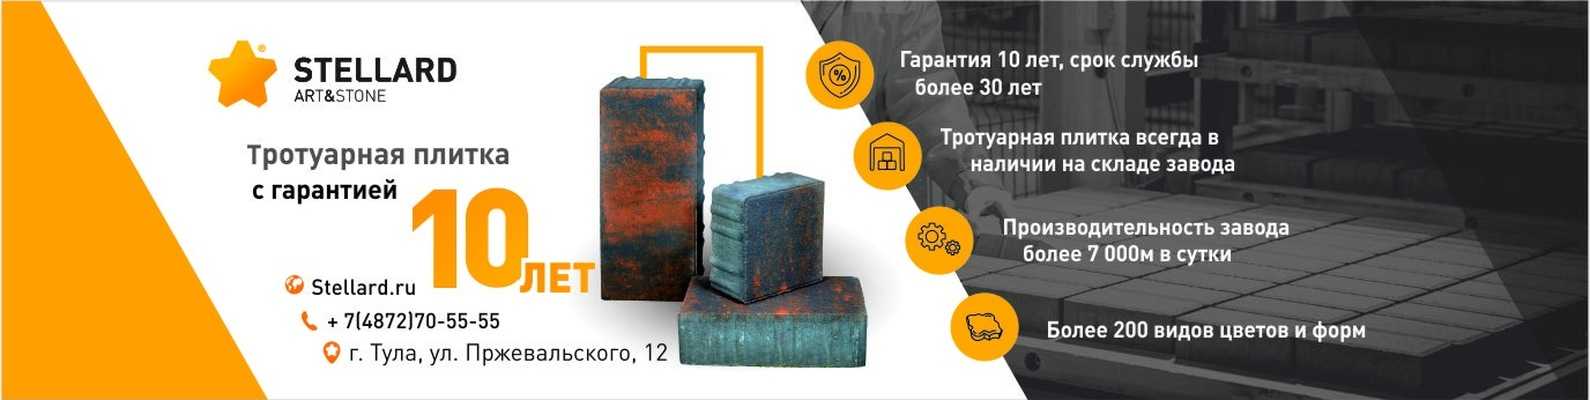 Производство брусчатки, бизнес с 300 тыс. рублей